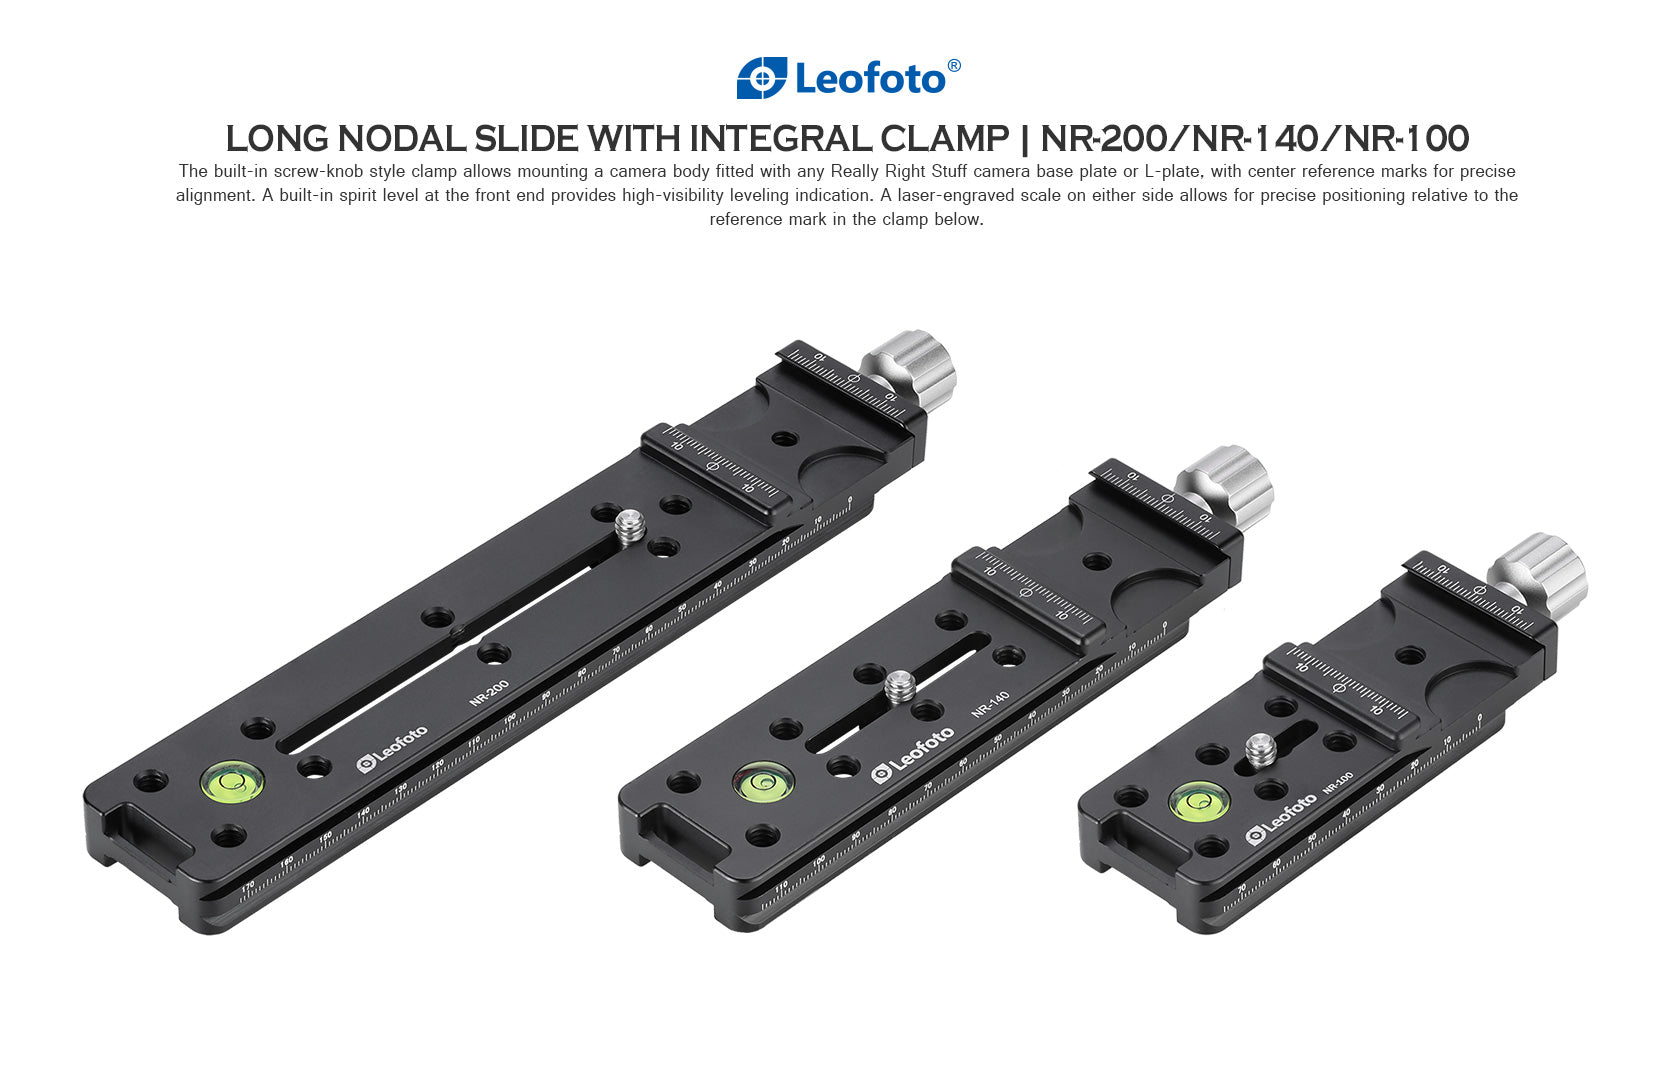 Leofoto NR-100mm /NR-140mm /NR-200mm Long Nodal Slide with Clamp